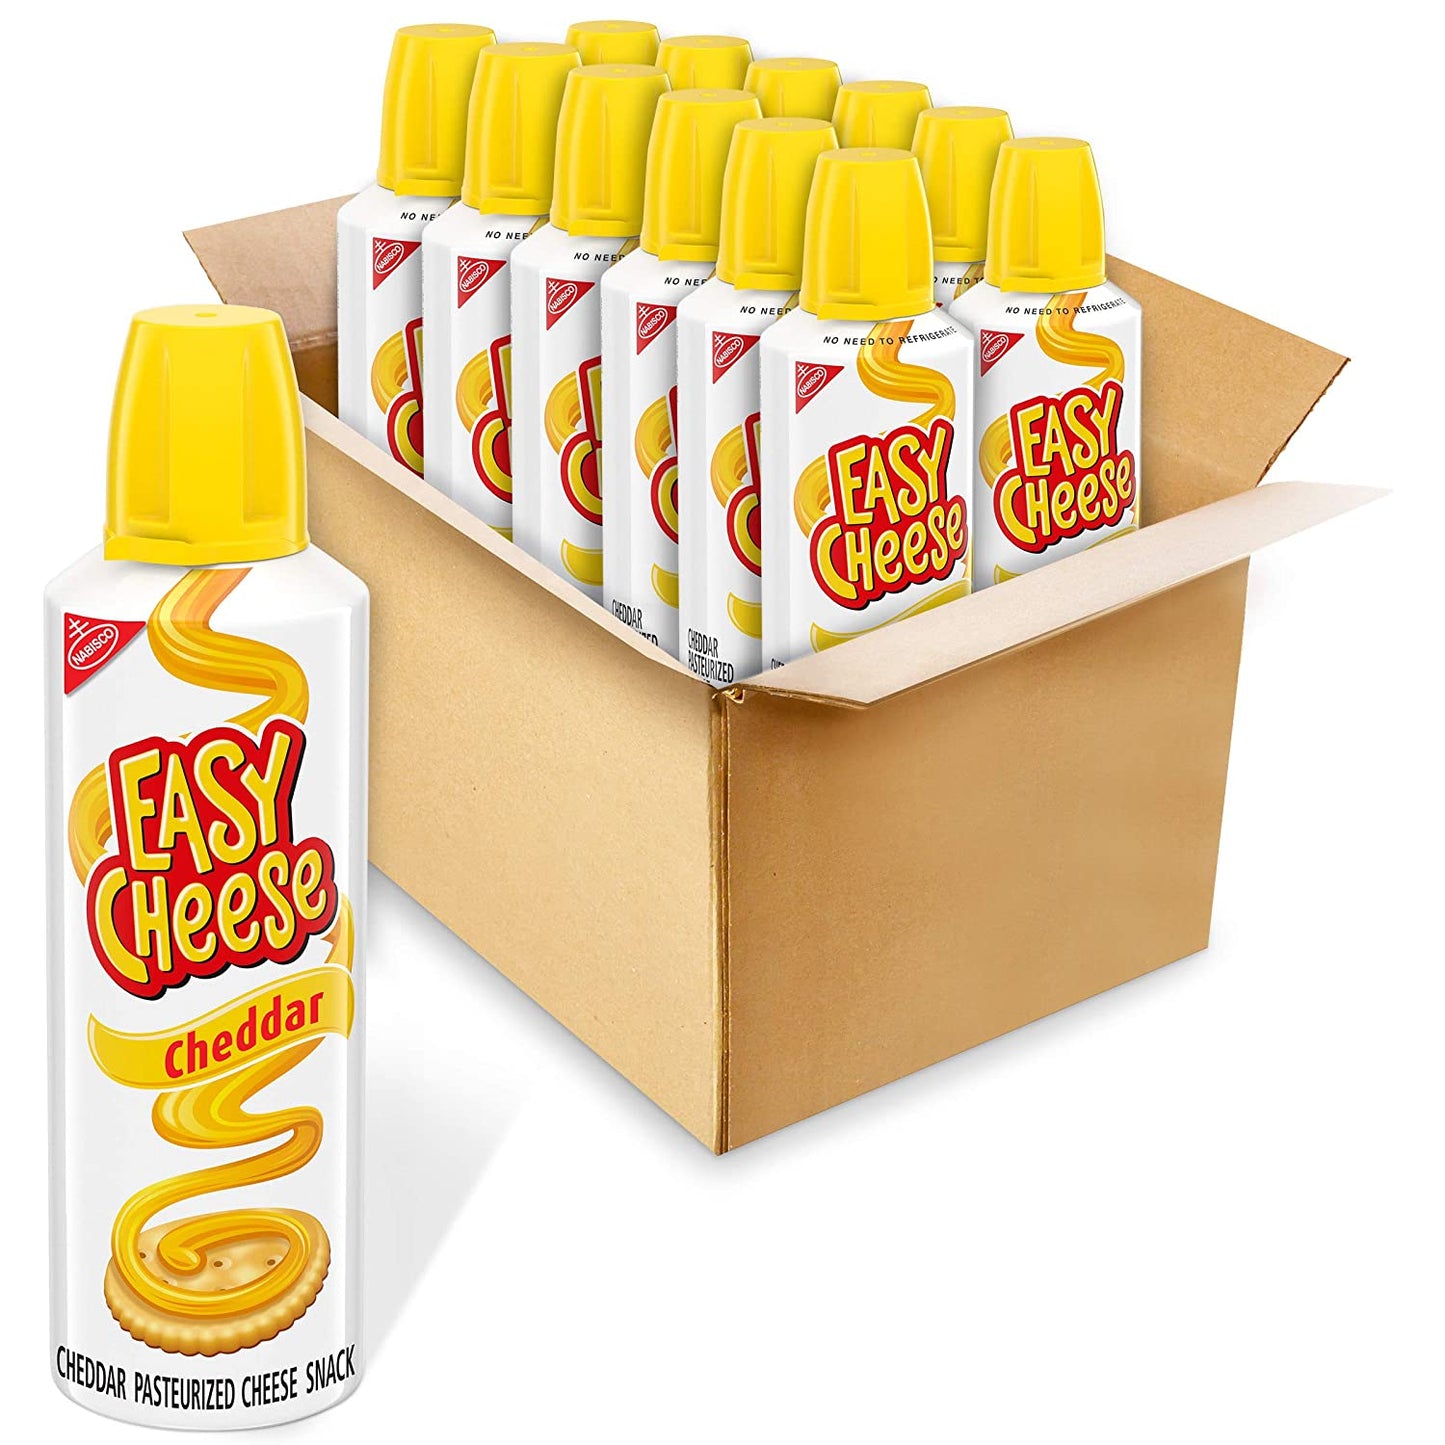 Easy Cheese Cheddar Cheese Snack Spray Can, 8 oz - Rare - USA